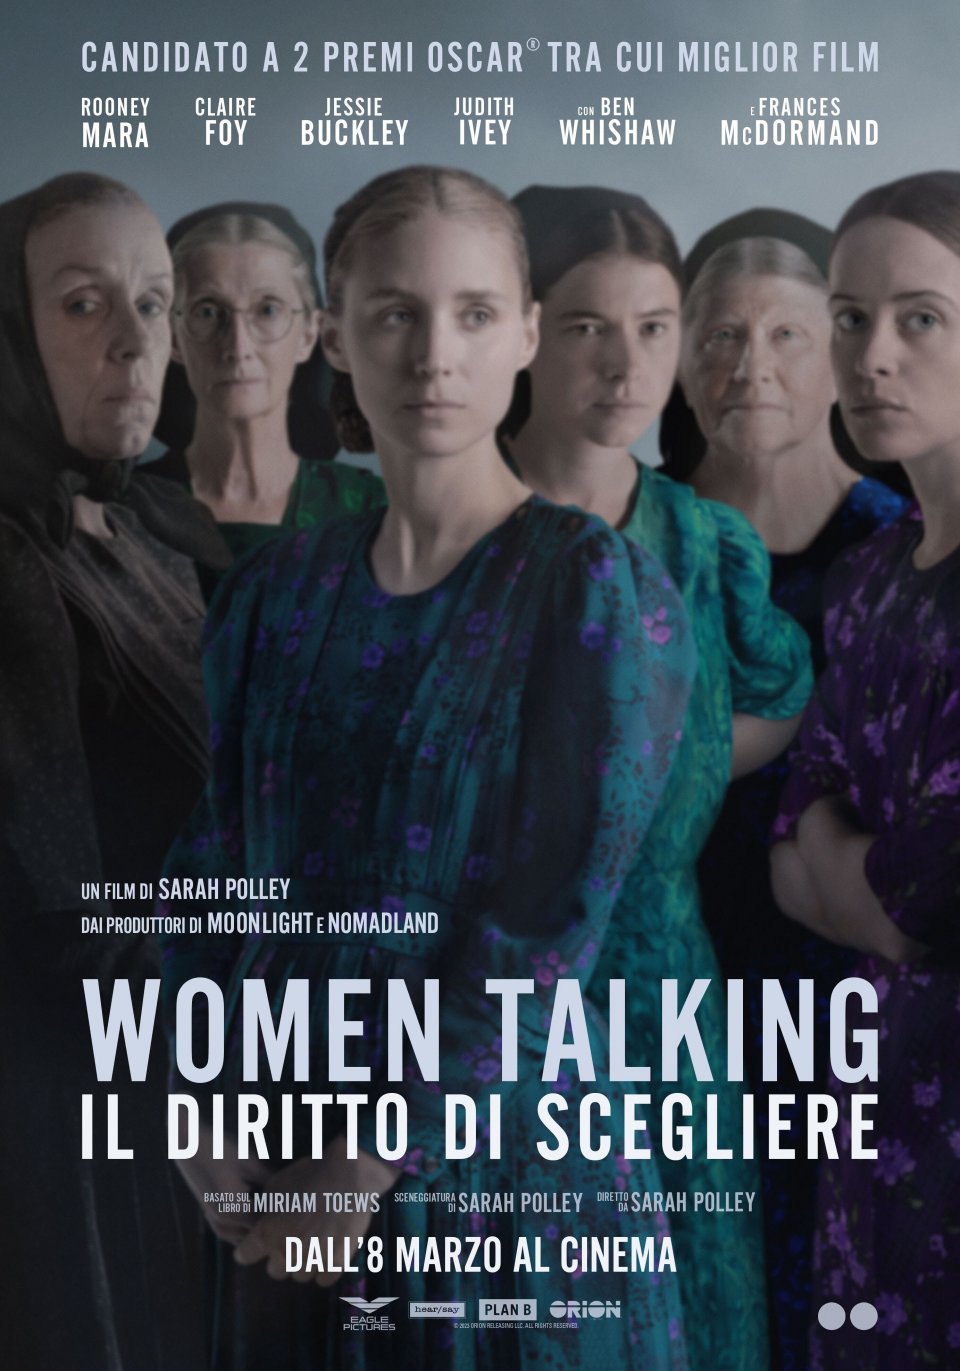 Women Talking trailer e poster italiano svelano l'uscita del film di